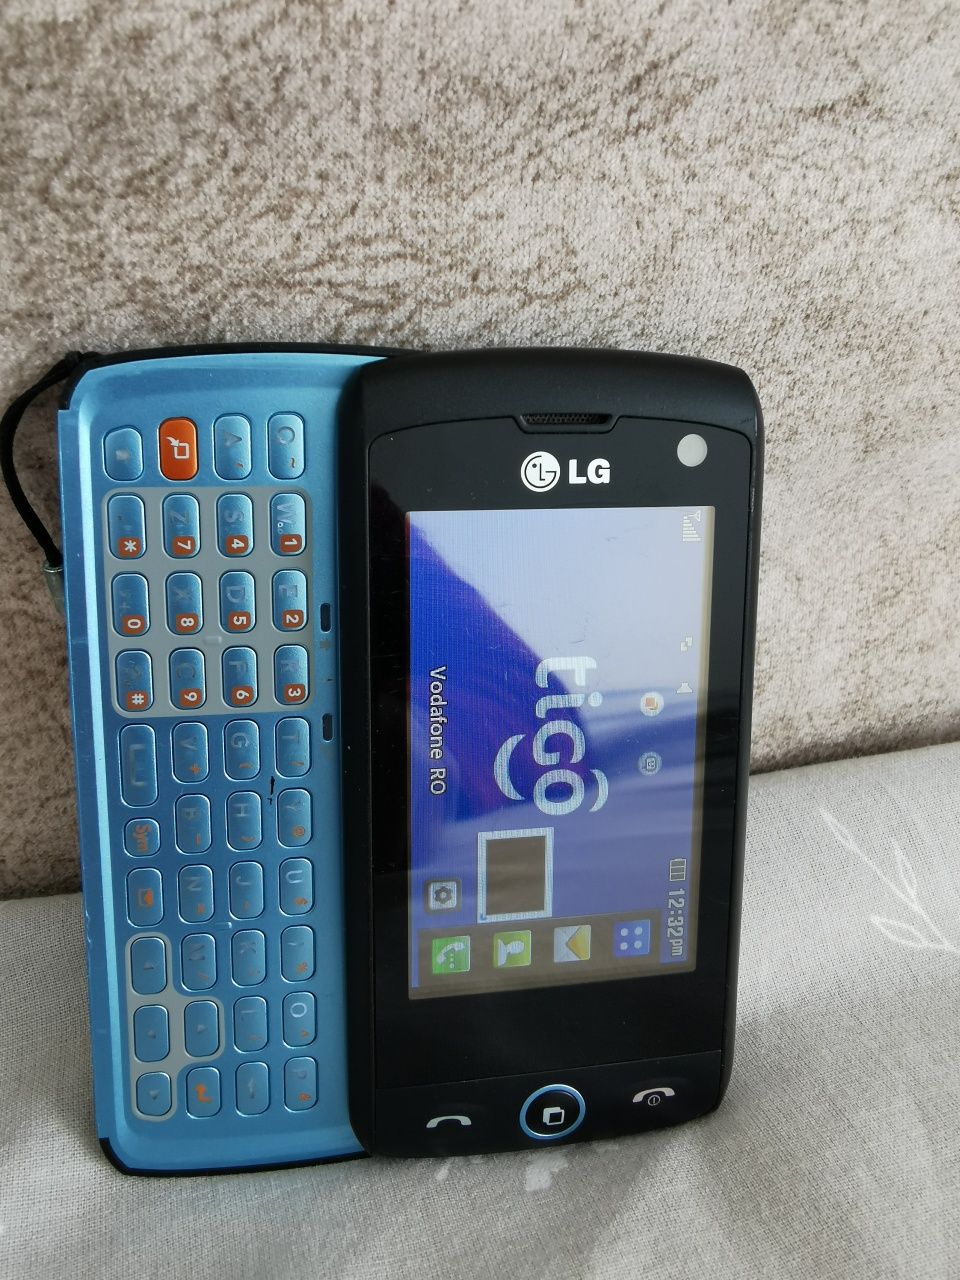 Telefon mobil model Lg Gw 525 glisant tastatura QWERTY